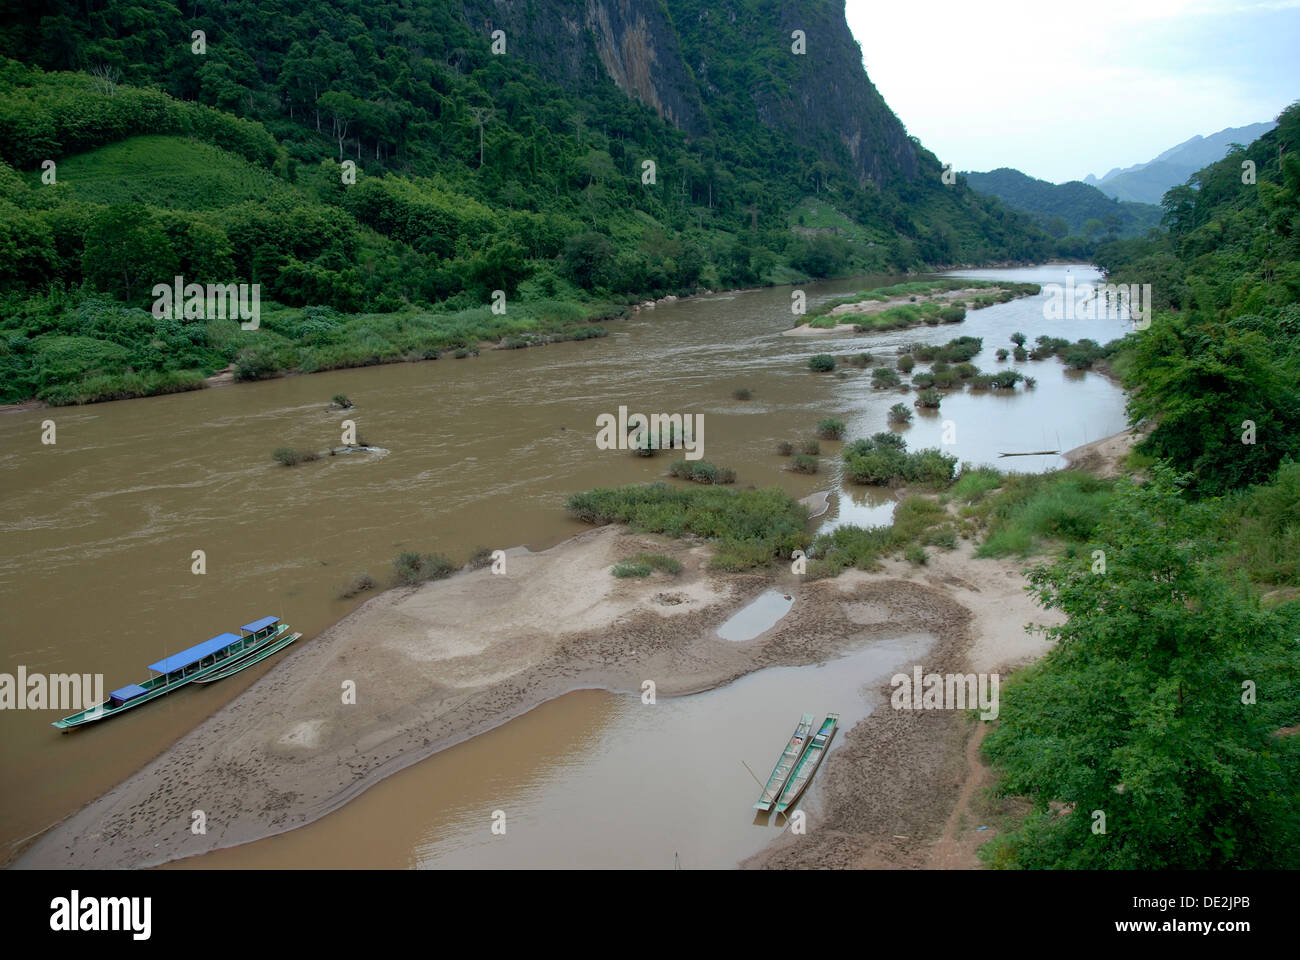 Rivière naturelle, une nature préservée, des bateaux sur la rivière Nam Ou, Nong Khiaw, province de Luang Prabang, Laos, Asie du Sud, Asie Banque D'Images